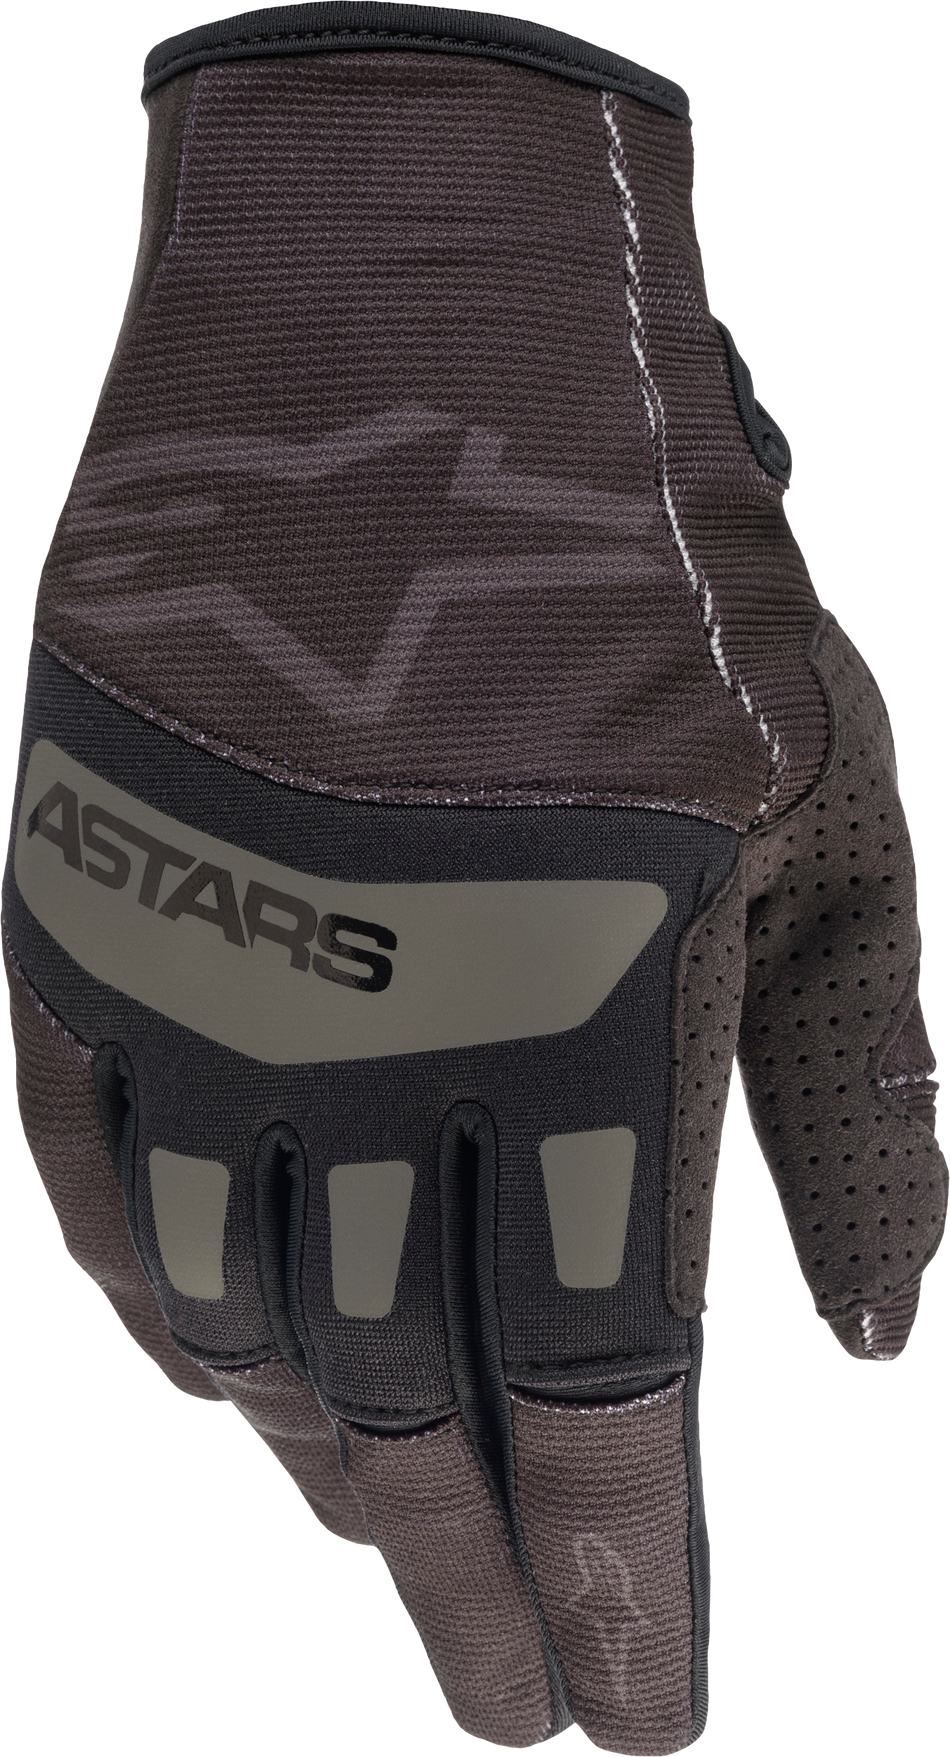 ALPINESTARS Techstar Gloves Black/Black Md 3561022-1100-M